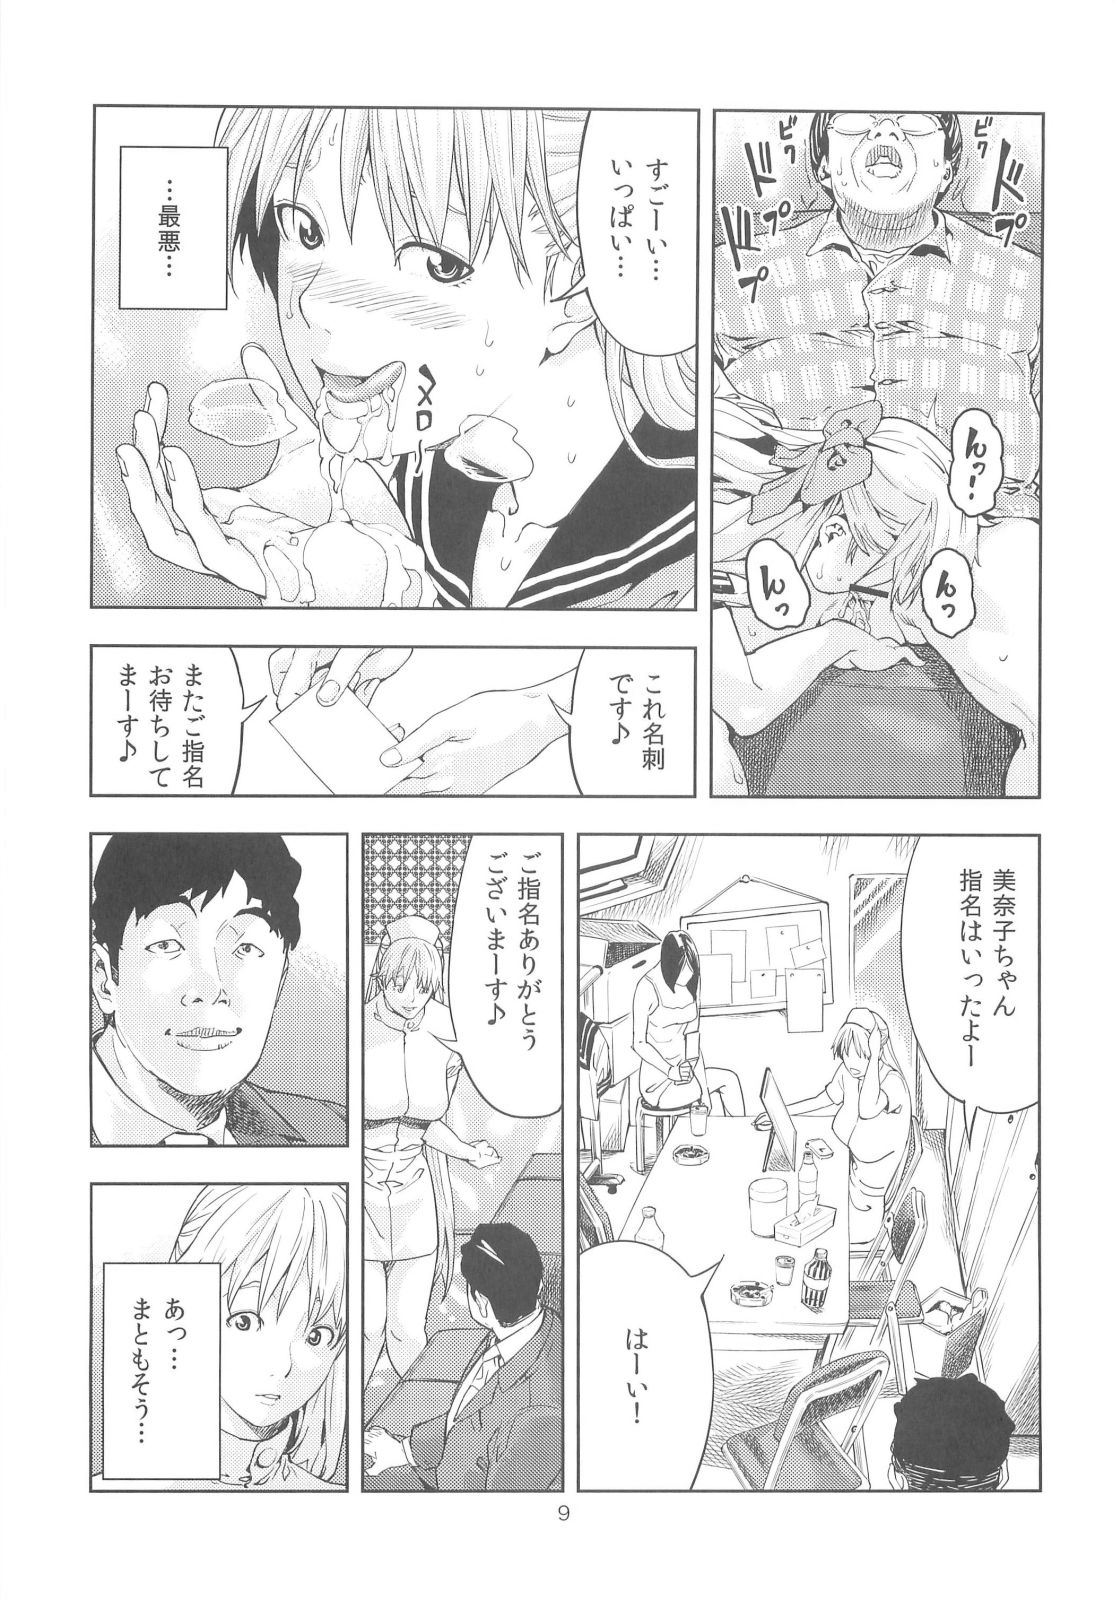 【セーラームーン】風俗嬢の美奈子はゲス男に弱みを握られ、目隠し状態でハメ撮りされることに...。の画像8枚目